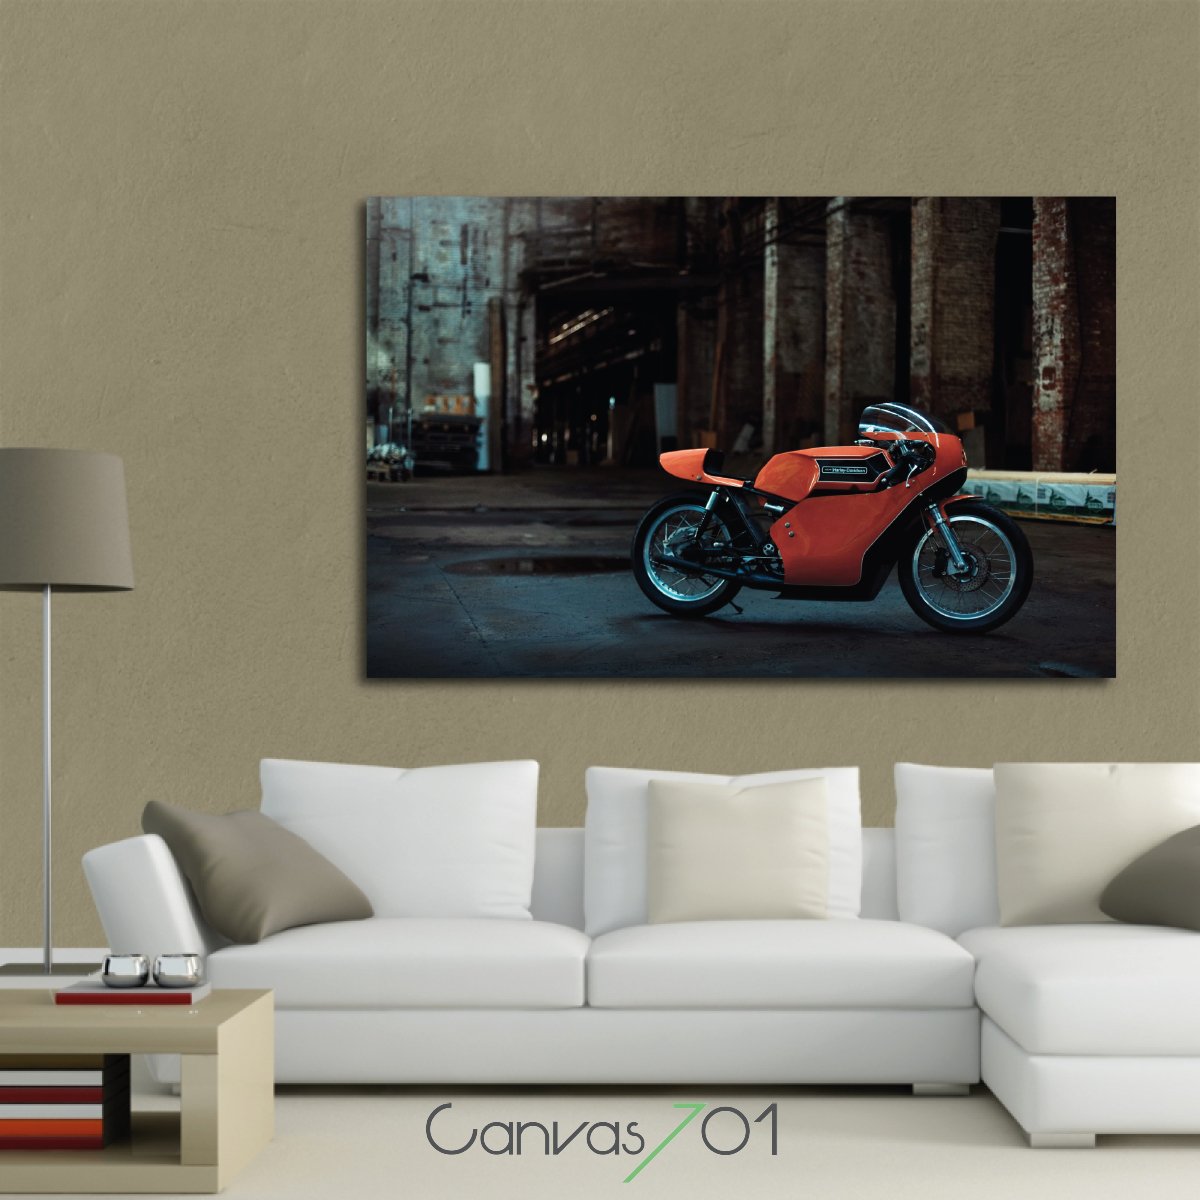 Market701 | Turuncu Motosiklet Kanvas Tablo